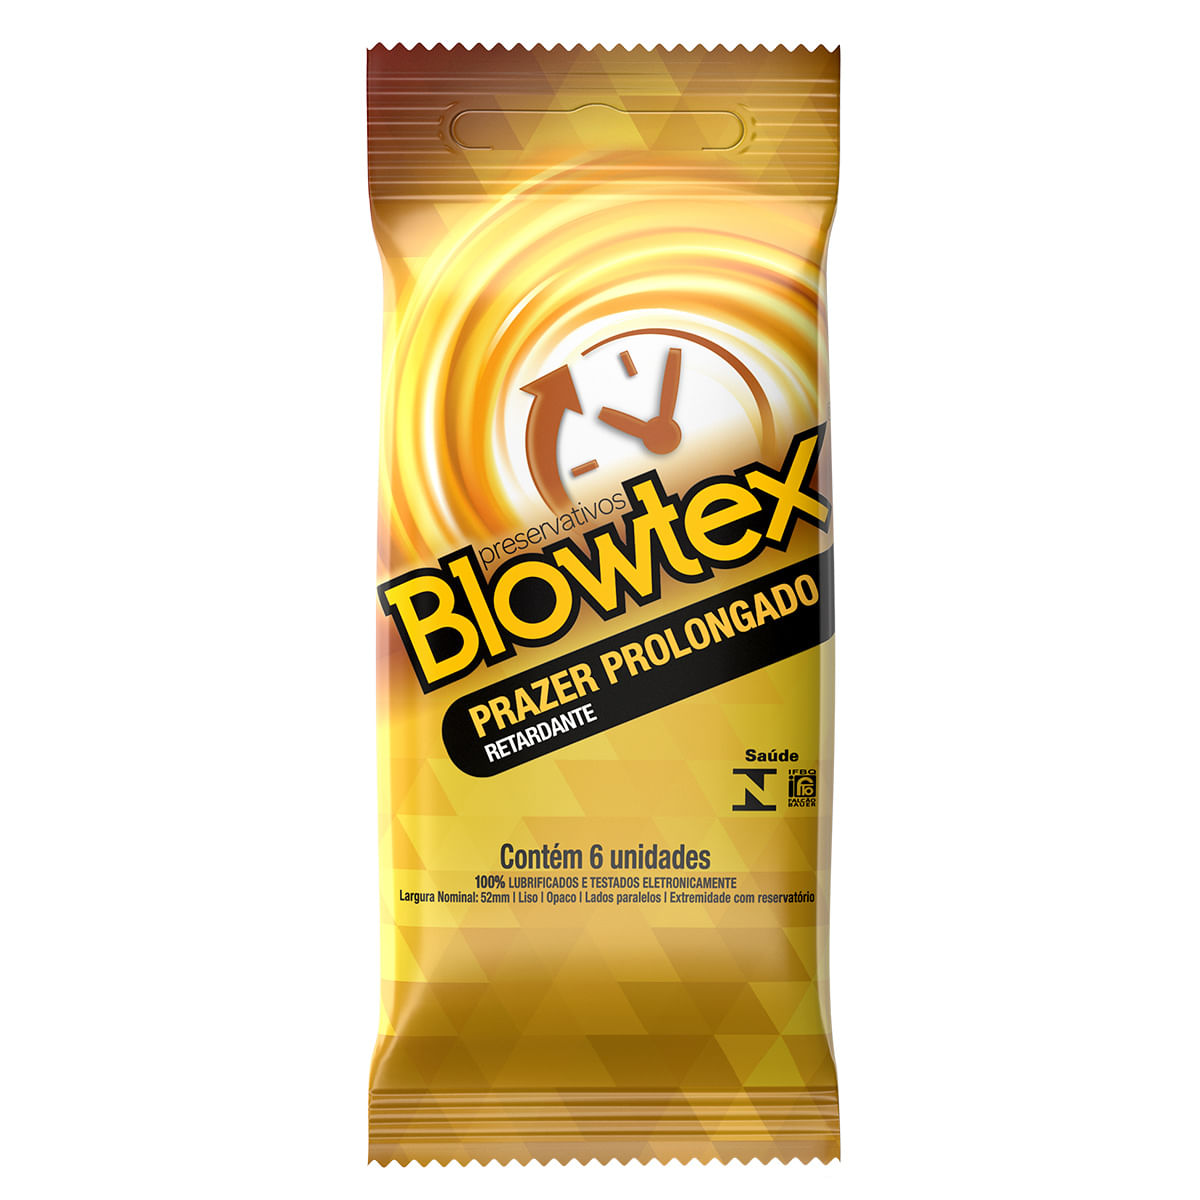 Preservativos Lubrificados Retardante Prazer Prolongado com 6 unidades Blowtex